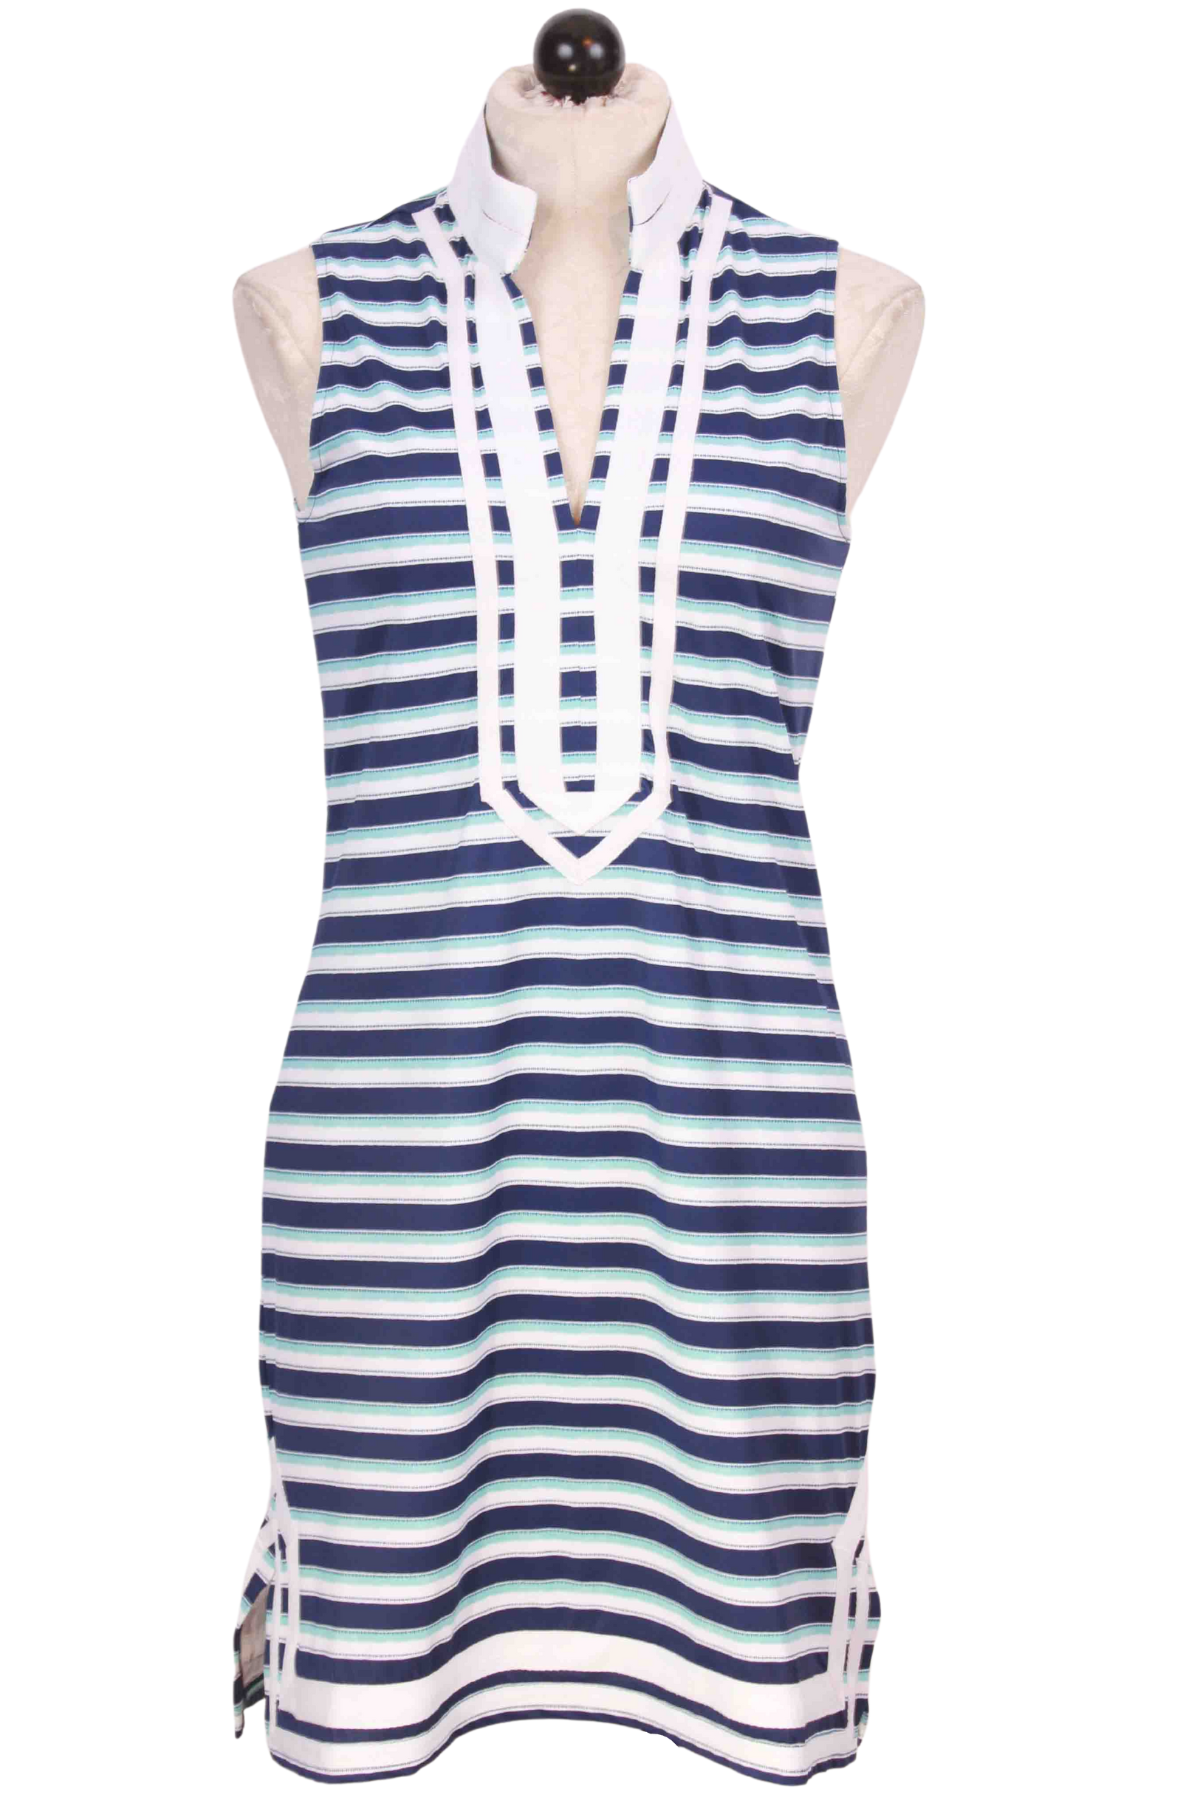 Delray Stripe Sleeveless Tunic Dress by Cabana Life